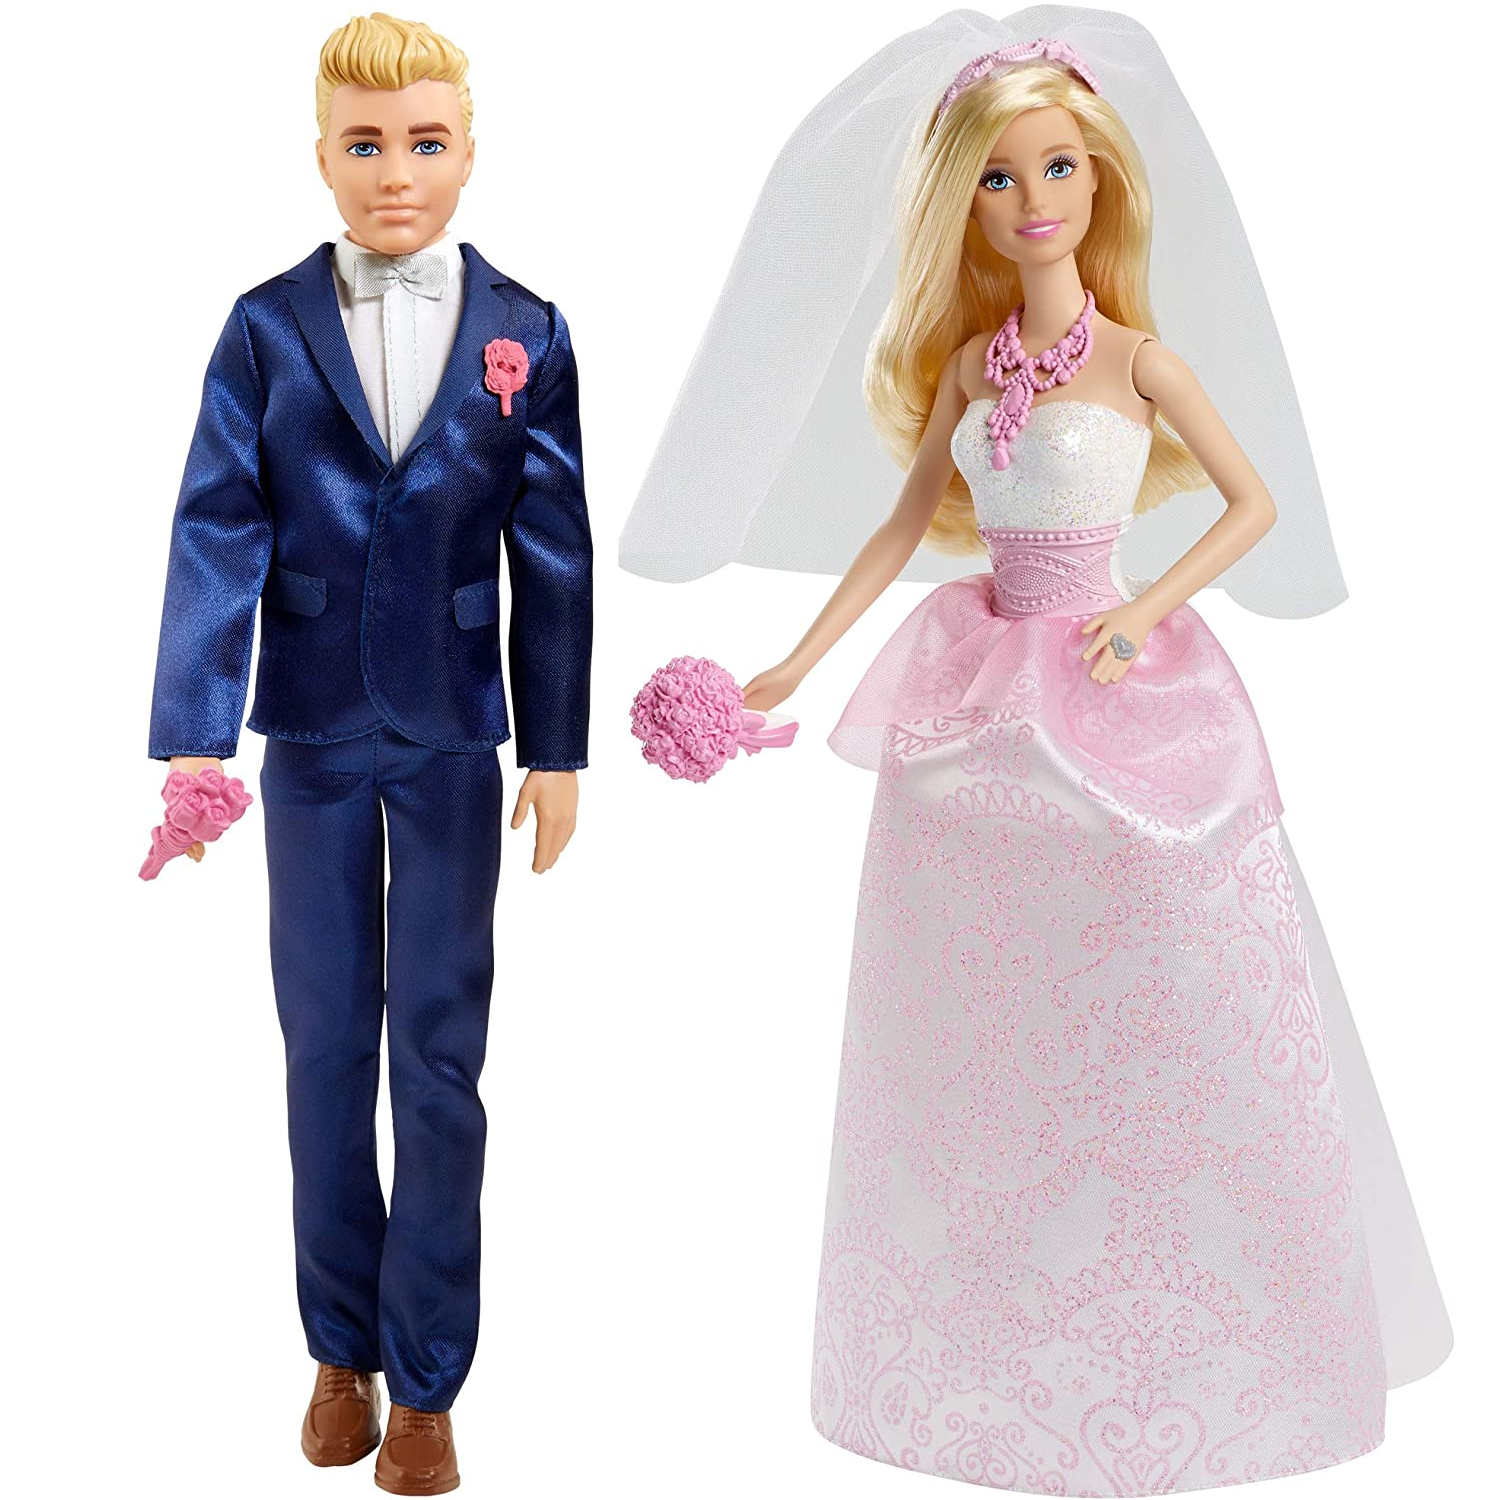 Aanhoudend Afkeer Bestuiven Barbie and Ken Wedding Dolls – One Great Shop